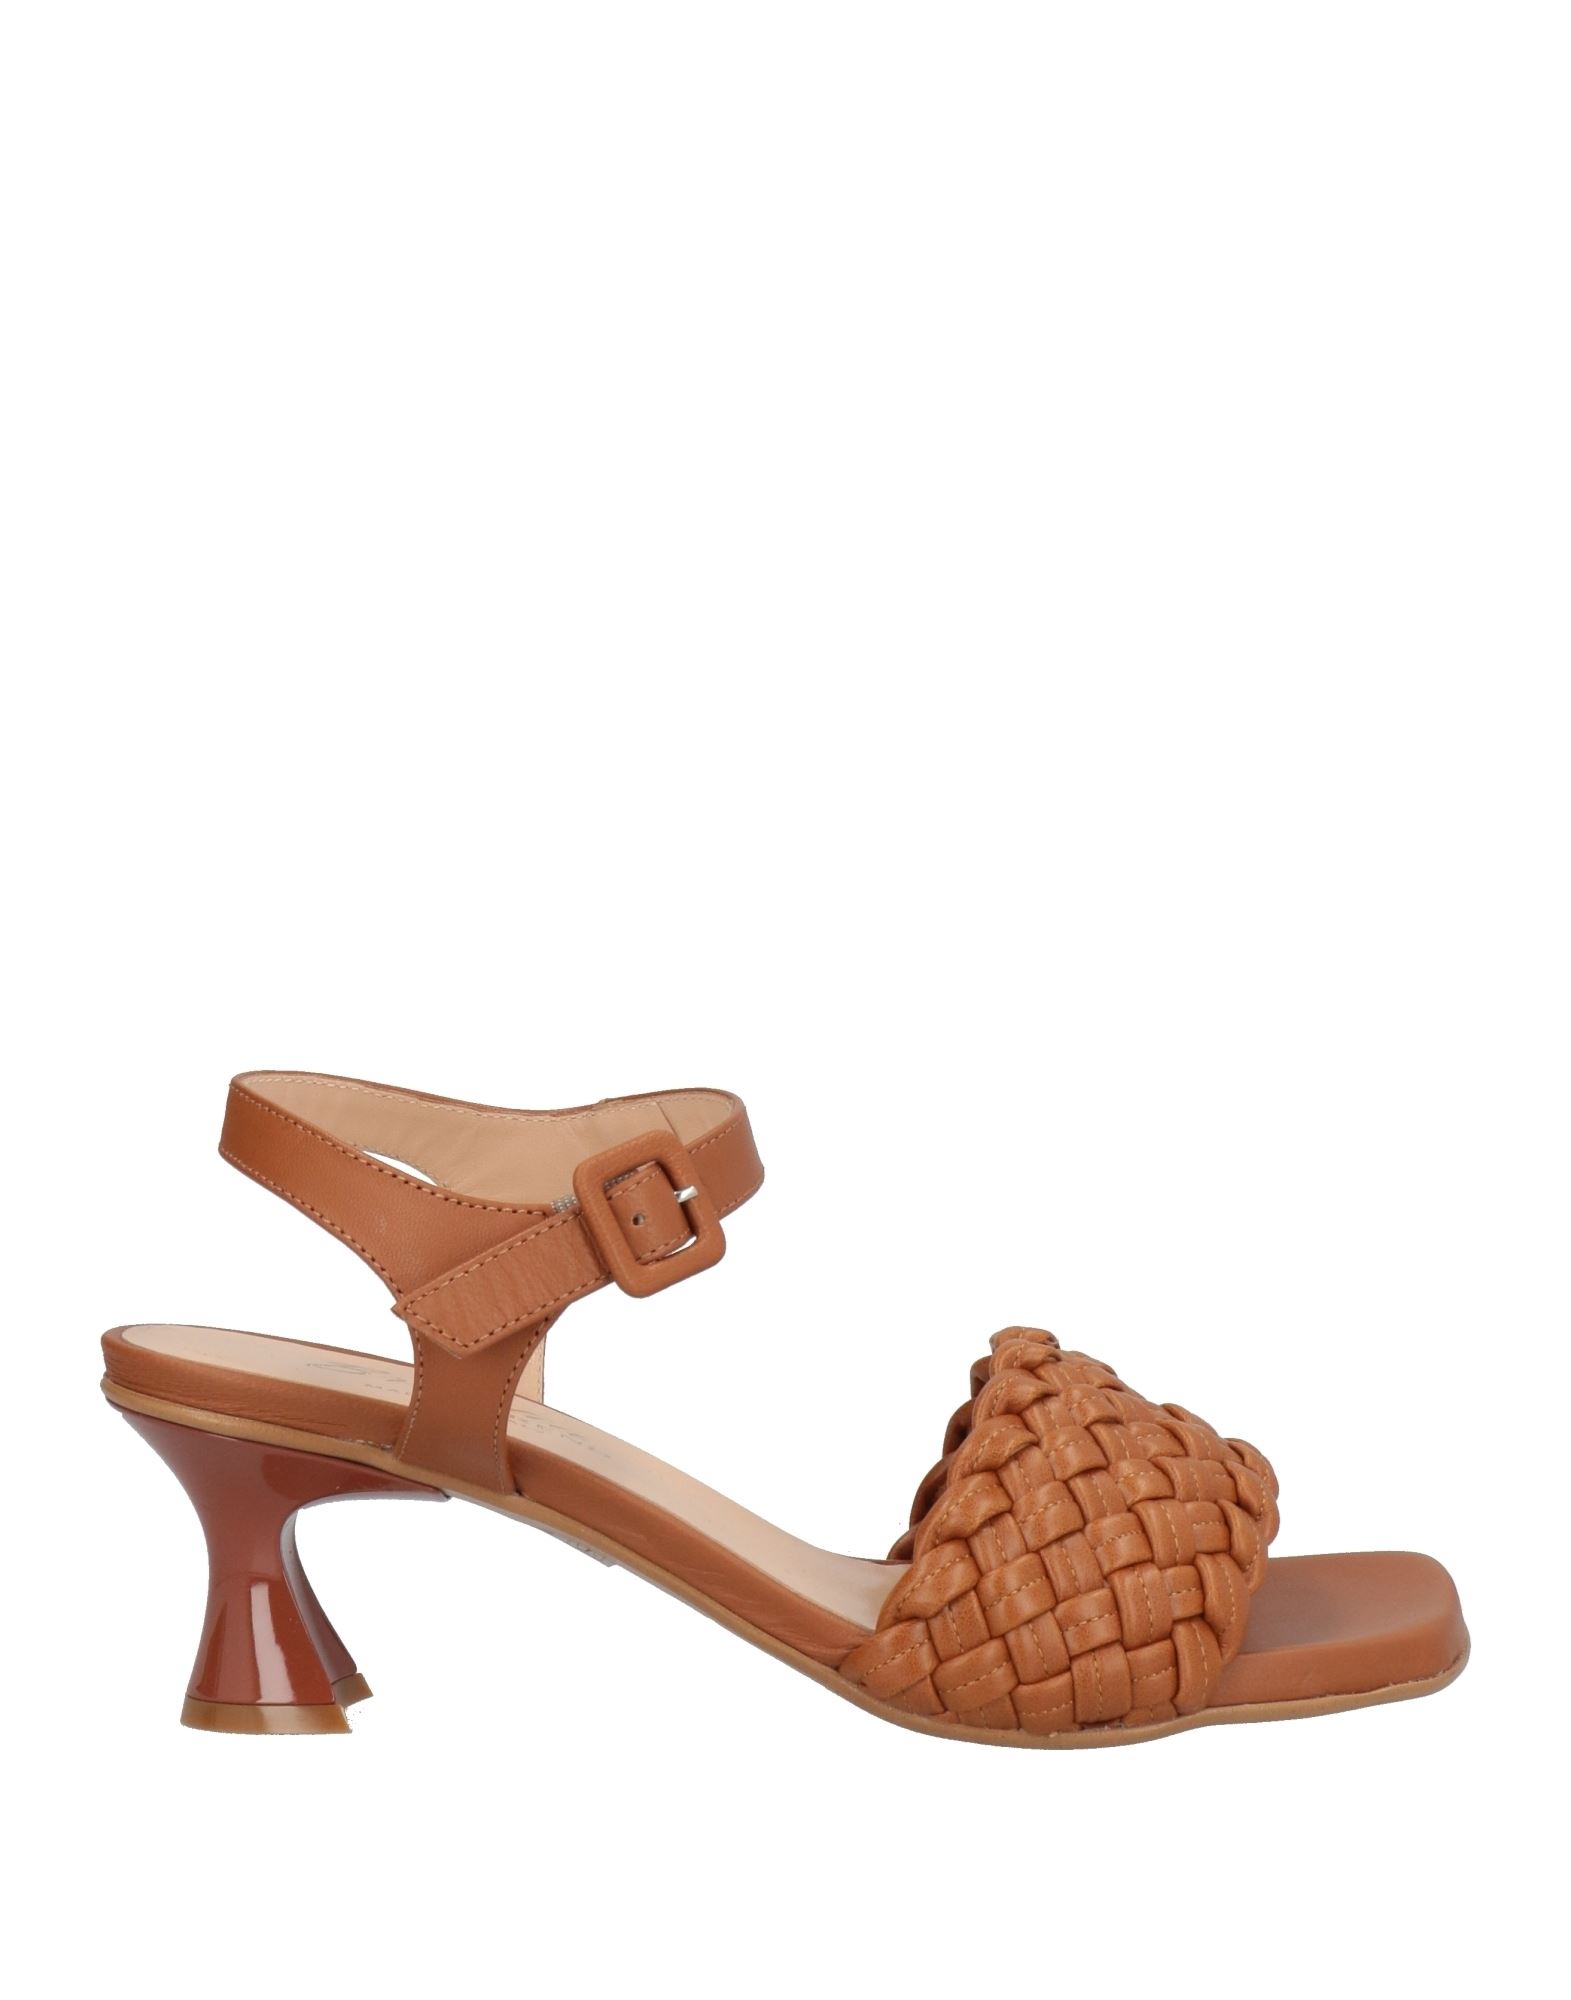 Bruglia Sandals In Brown